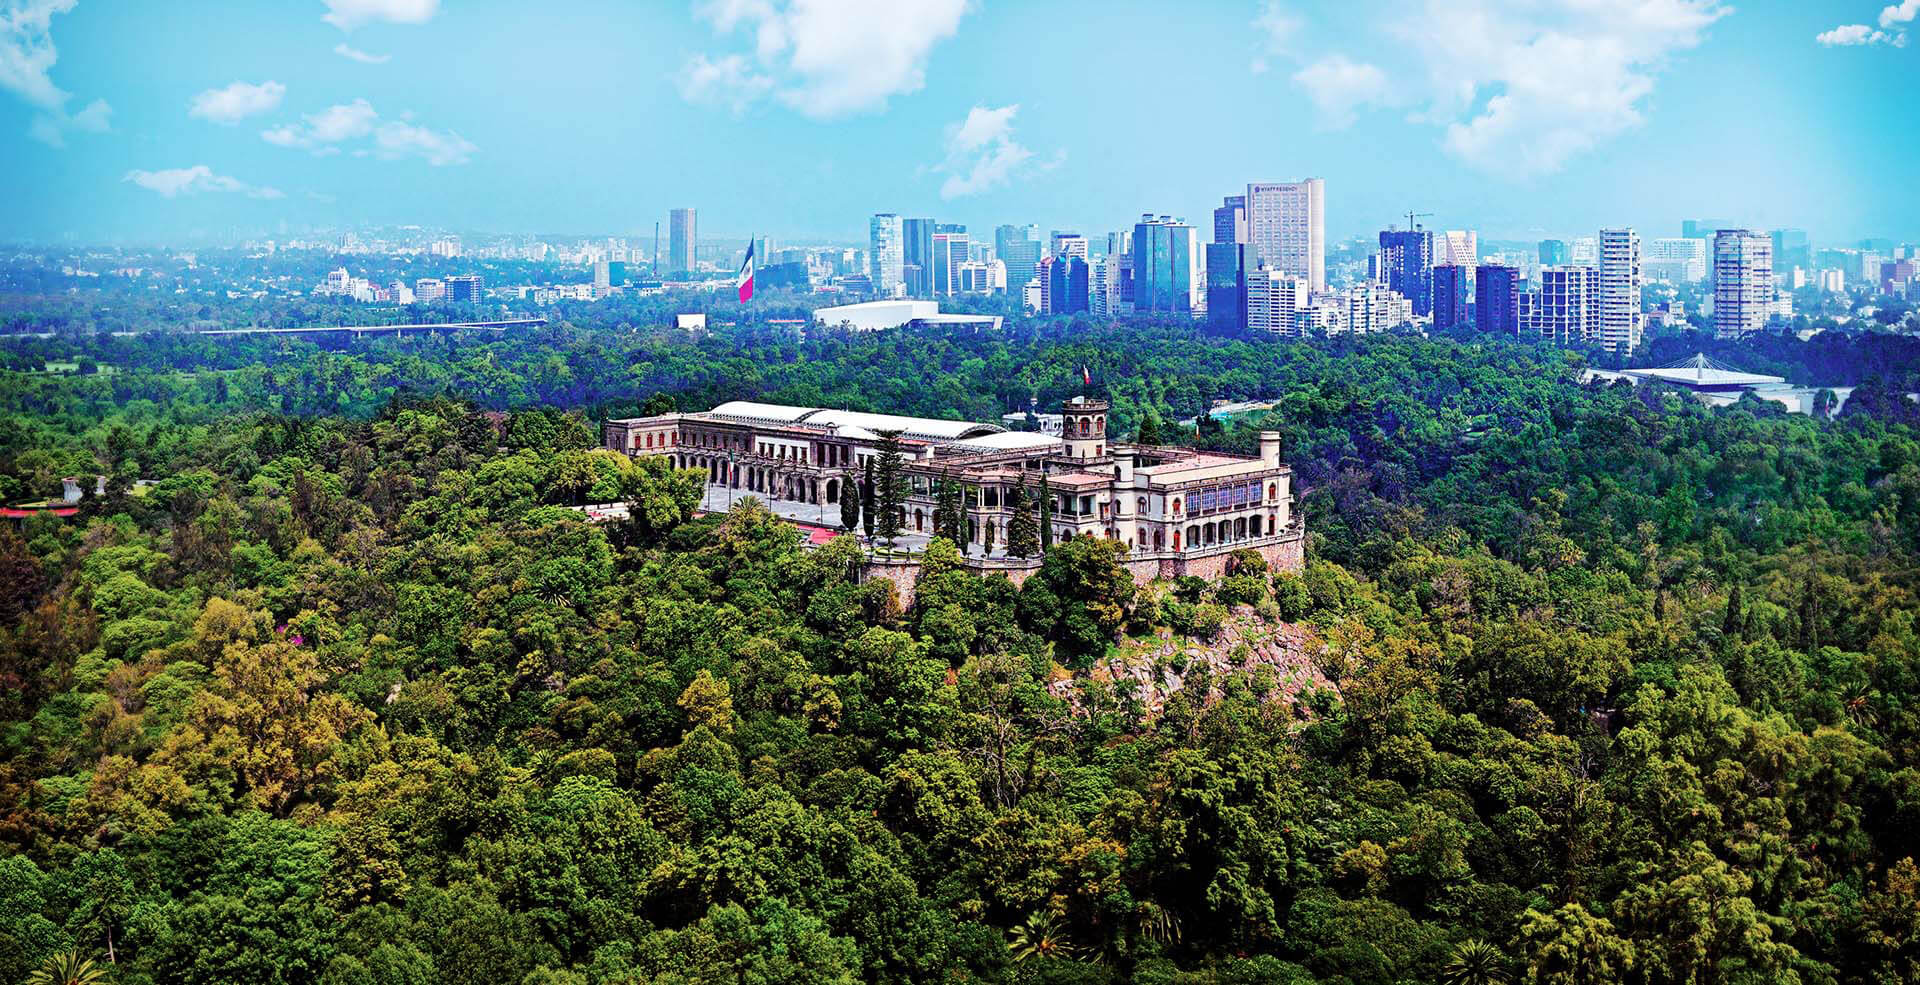  El Bosque de Chapultepec gana premio a mejor parque urbano del mundo